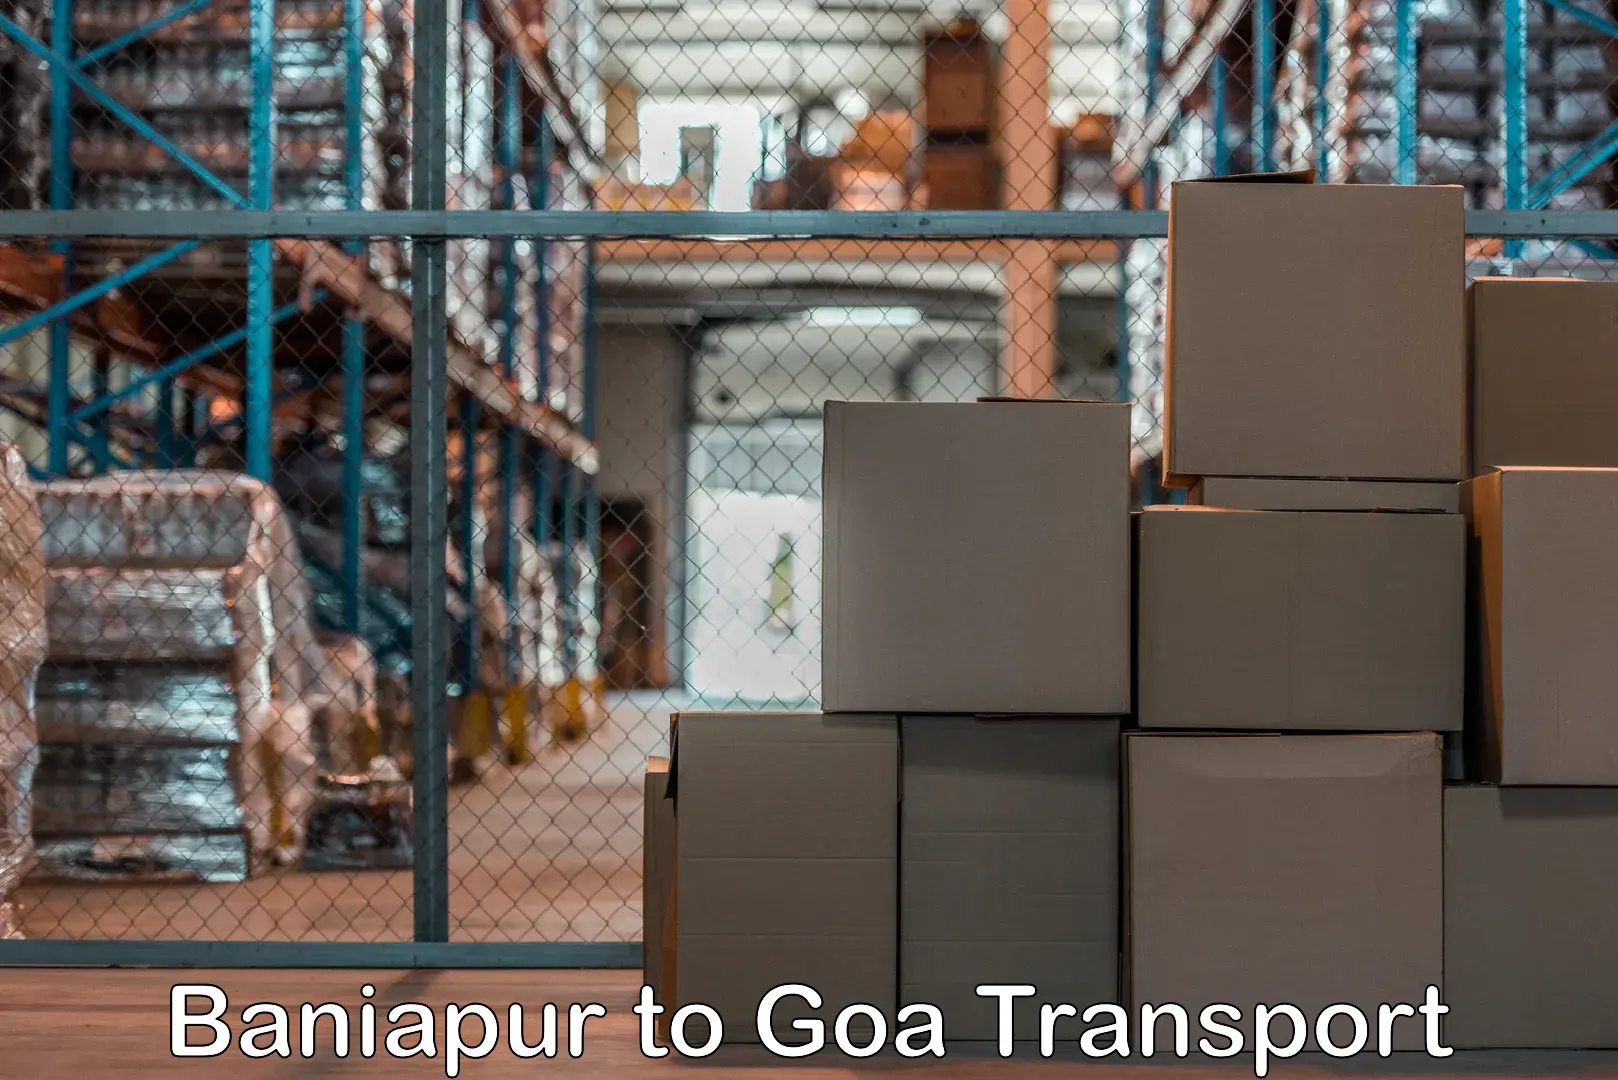 Air freight transport services Baniapur to Goa